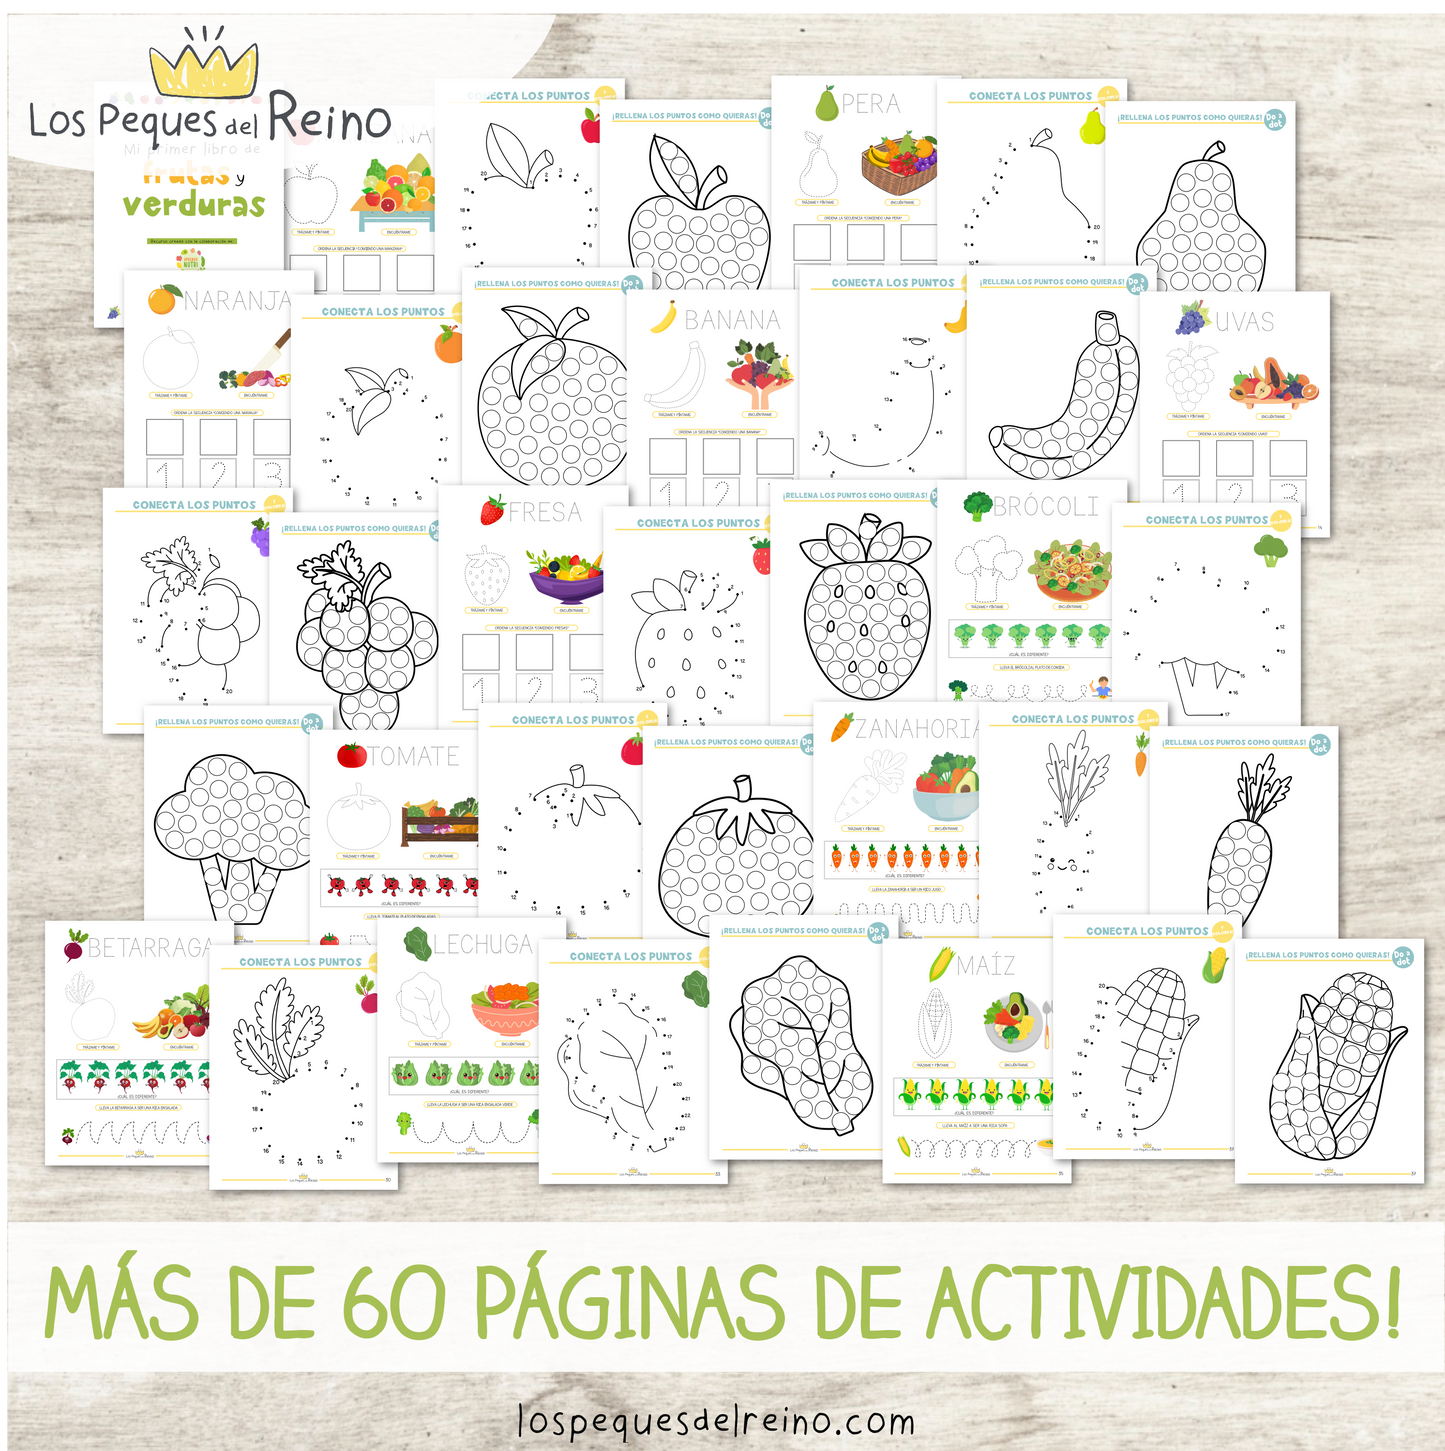 "Mi primer libro de frutas y verduras" - Pack Descargable